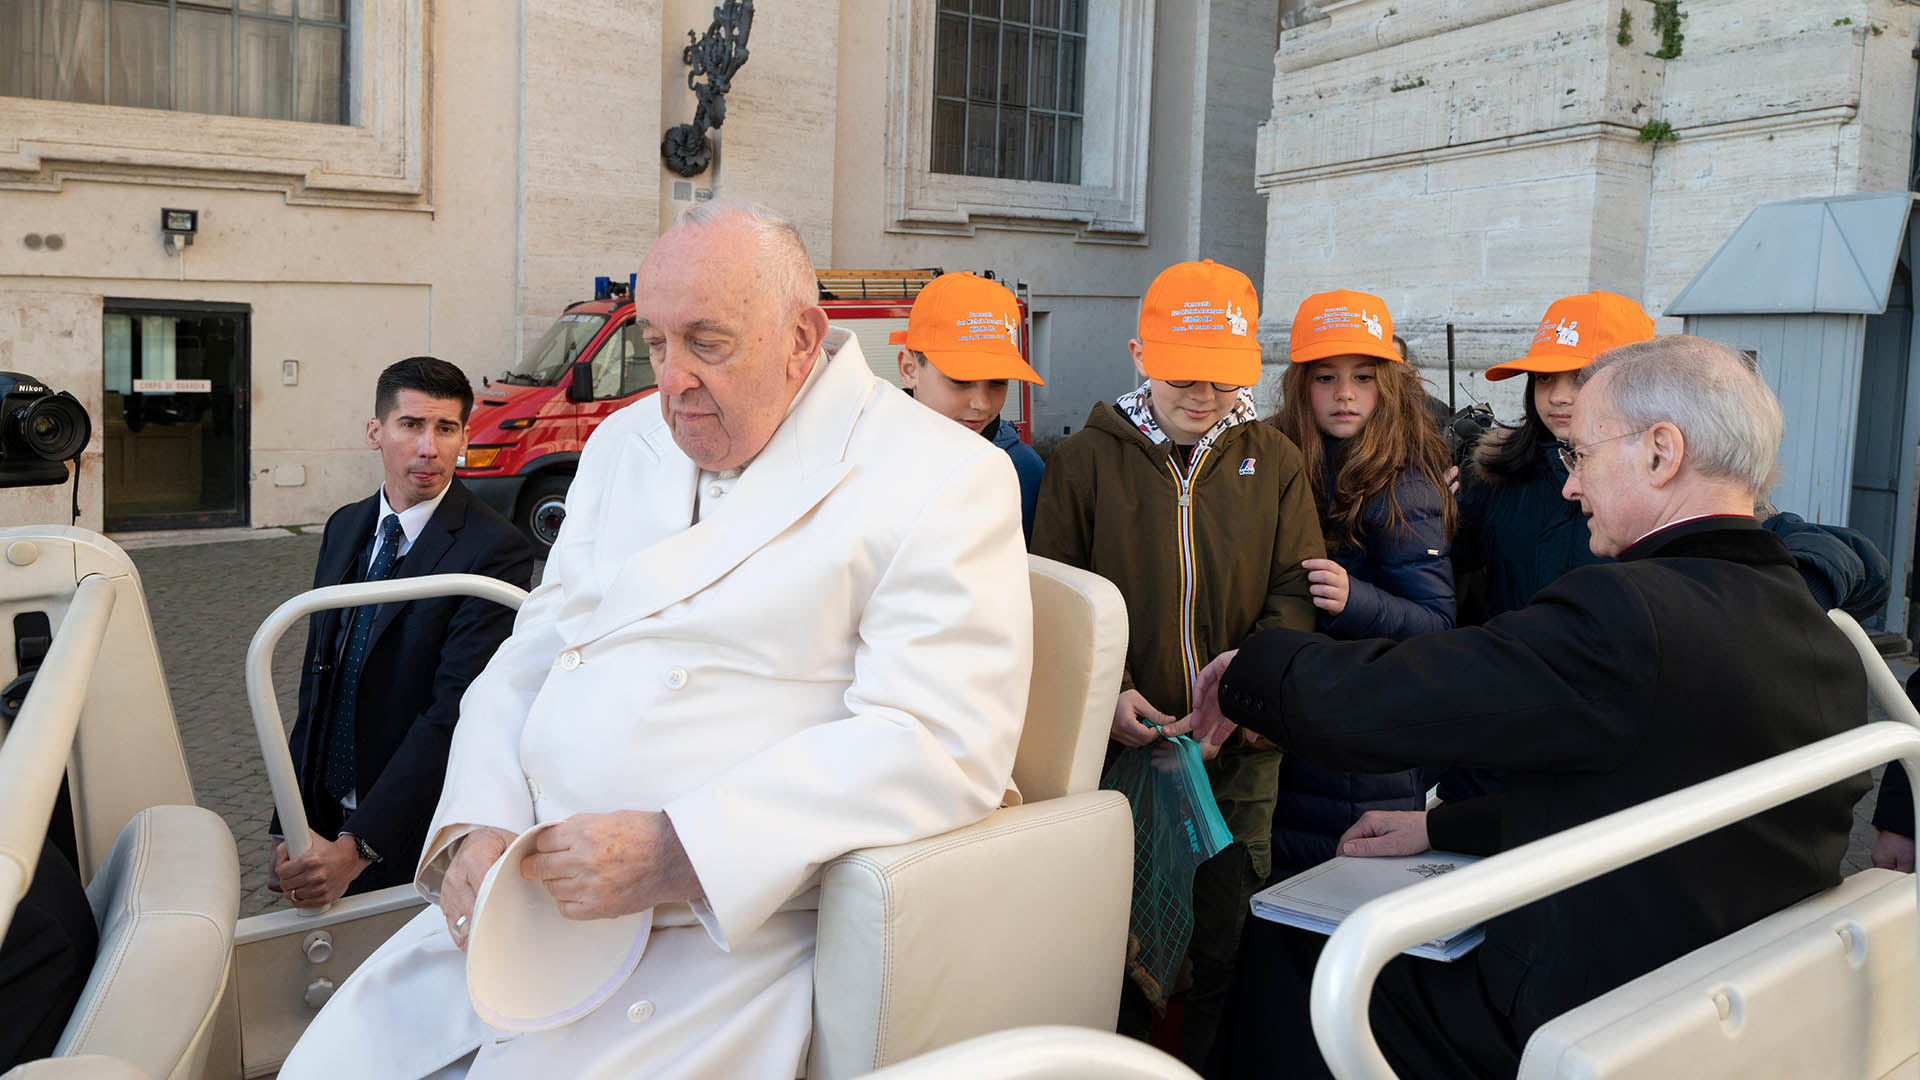 El Papa Francisco presenta una “clara mejoría” en su salud y podría ser dado de alta en los próximos días